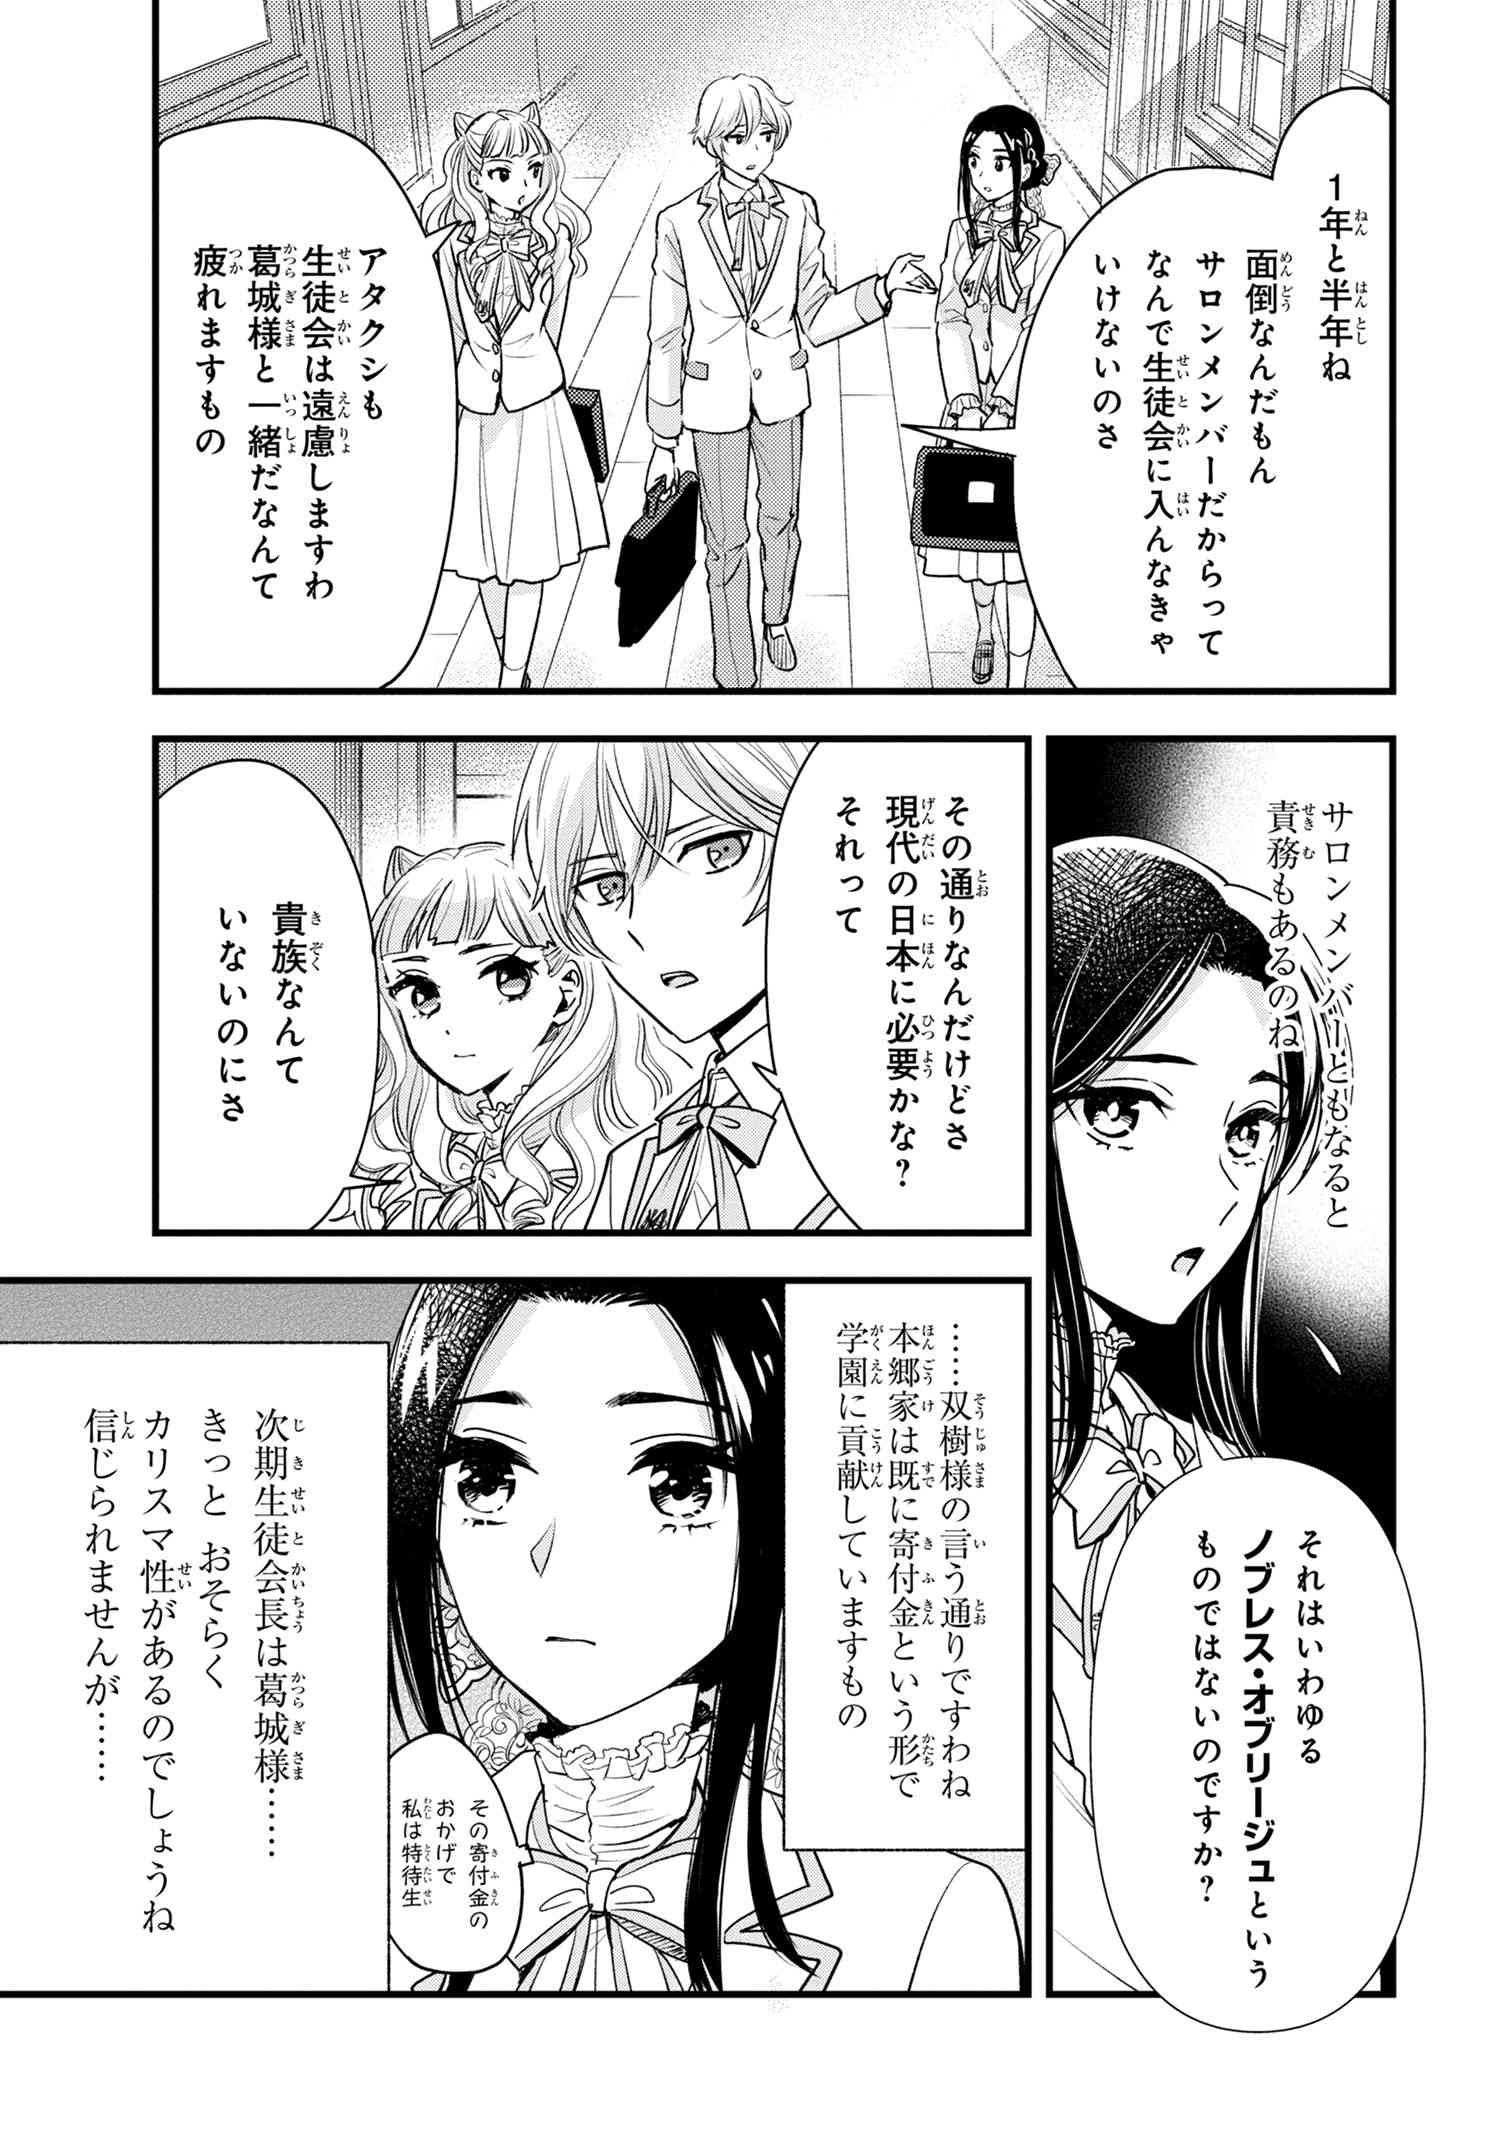 Reiko no Fuugi Akuyaku Reijou to Yobarete imasu ga, tada no Binbou Musume desu - Chapter 12-2 - Page 3